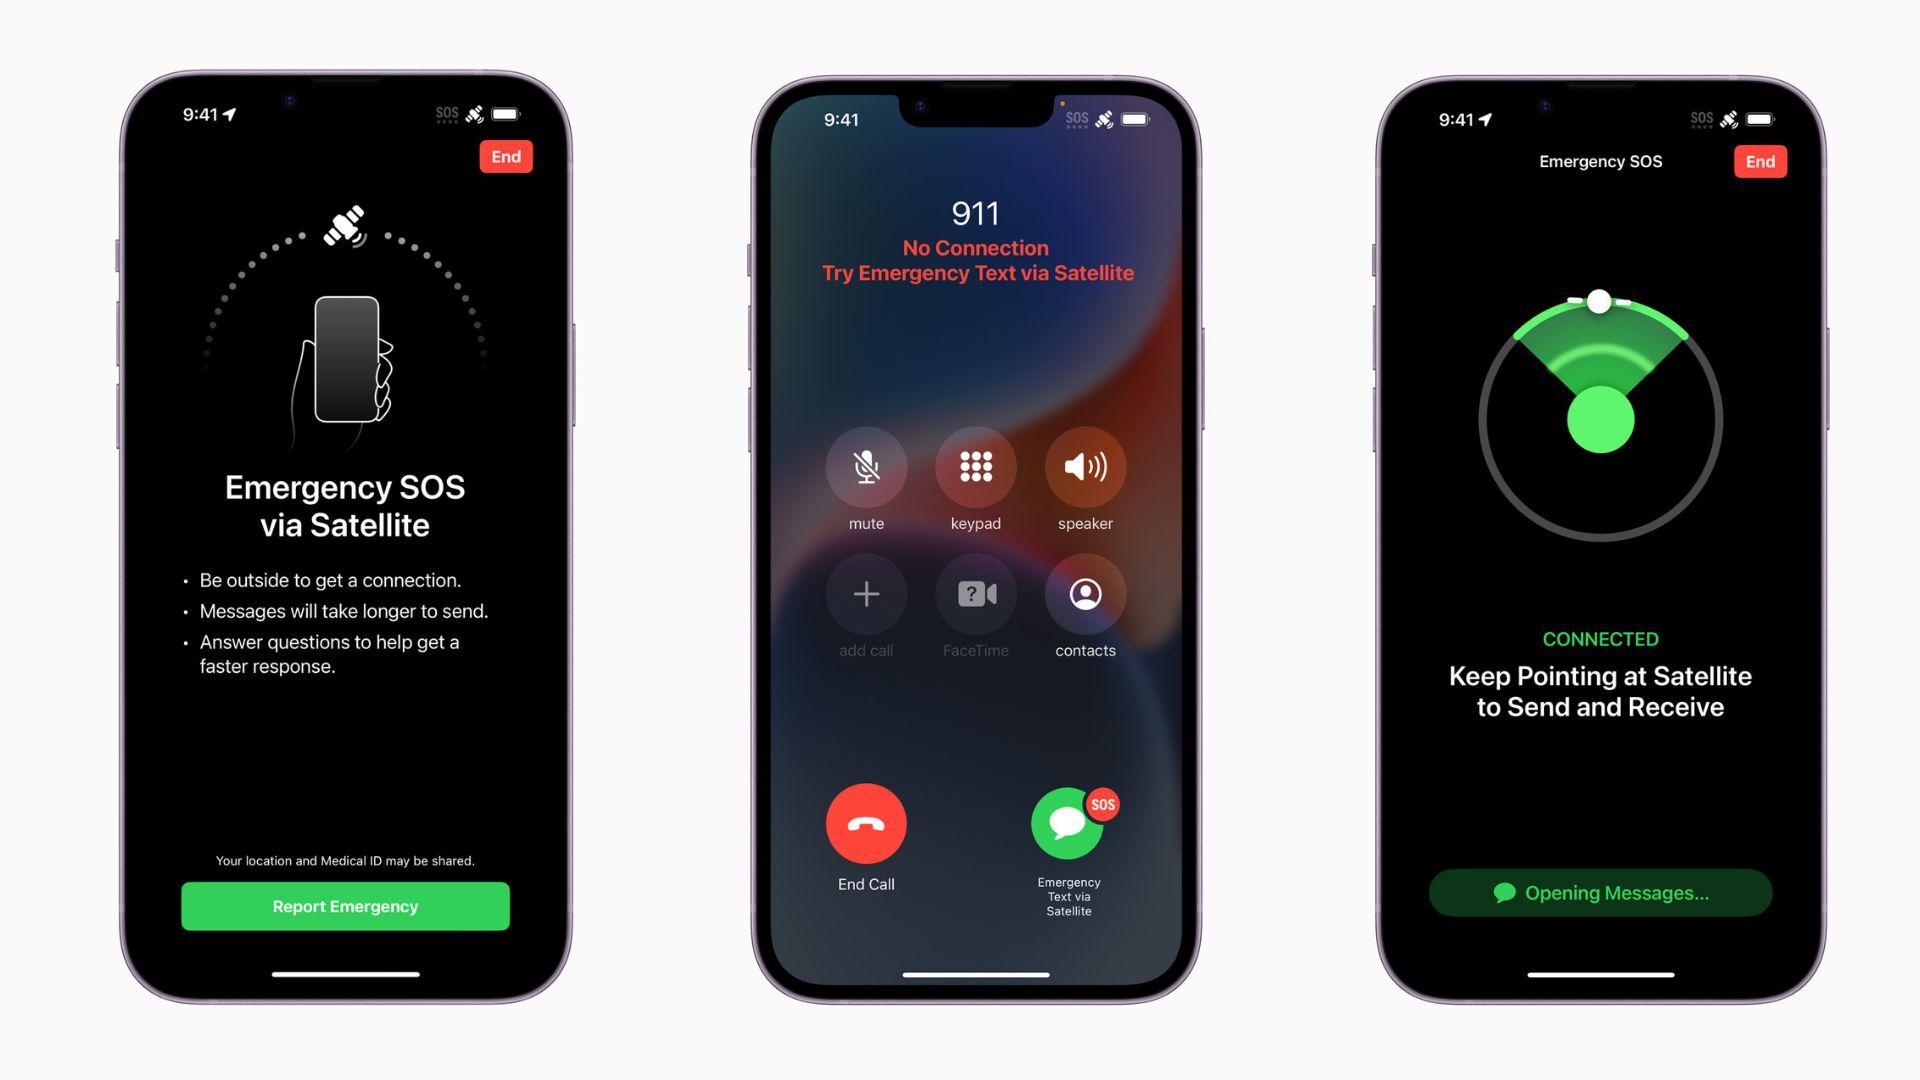 Resim Kredisi – Apple - Elveda “Hizmet Yok”: Skyphone, iPhone ve Galaxy için yeni bir çağın başlamasına yardımcı olabilir mi?